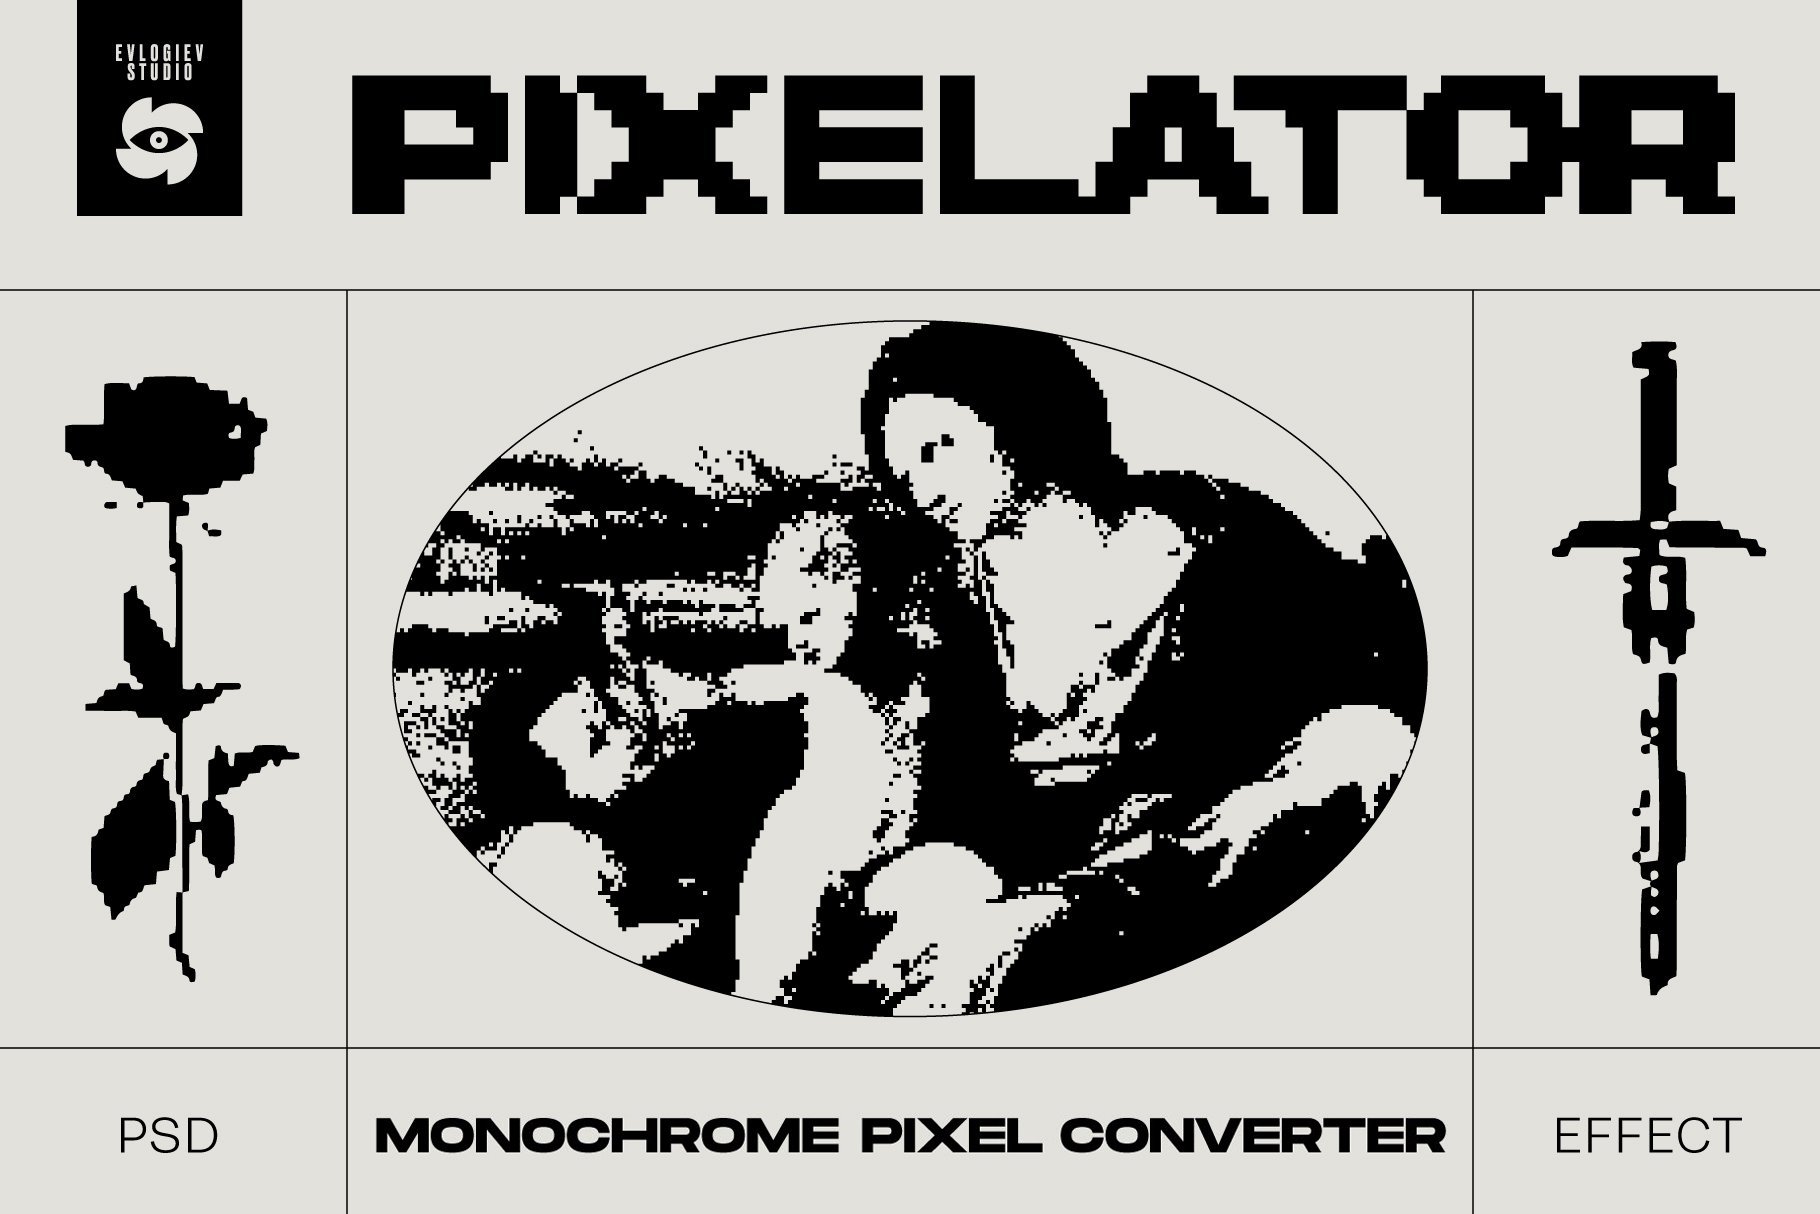 Pixelatorcover image.